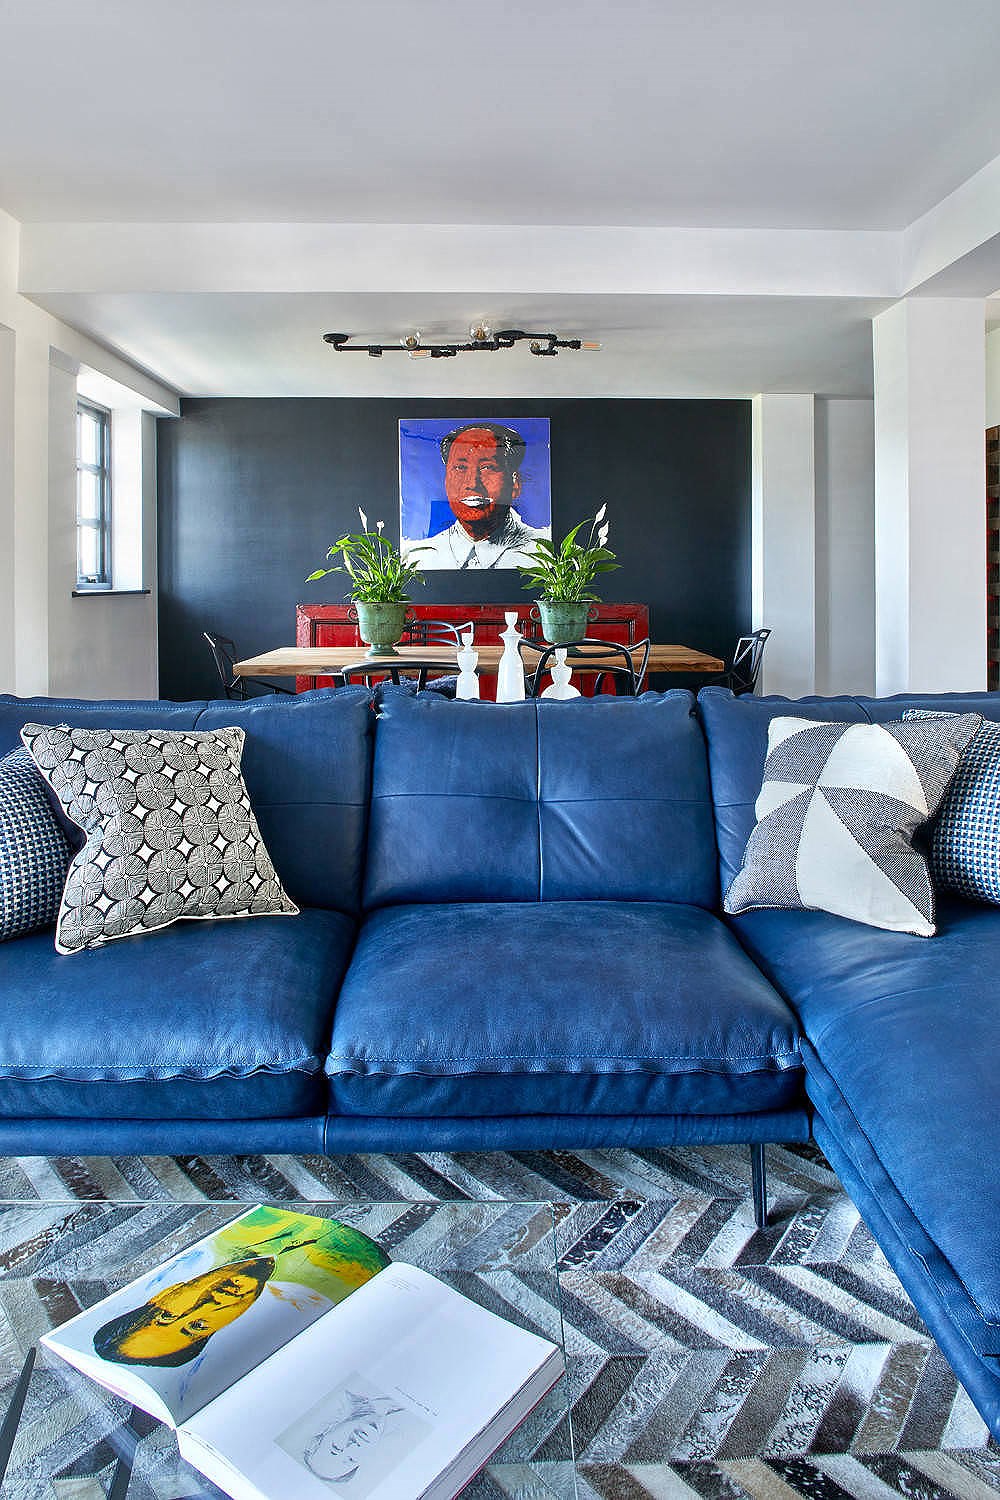 bộ sofa màu xanh dương